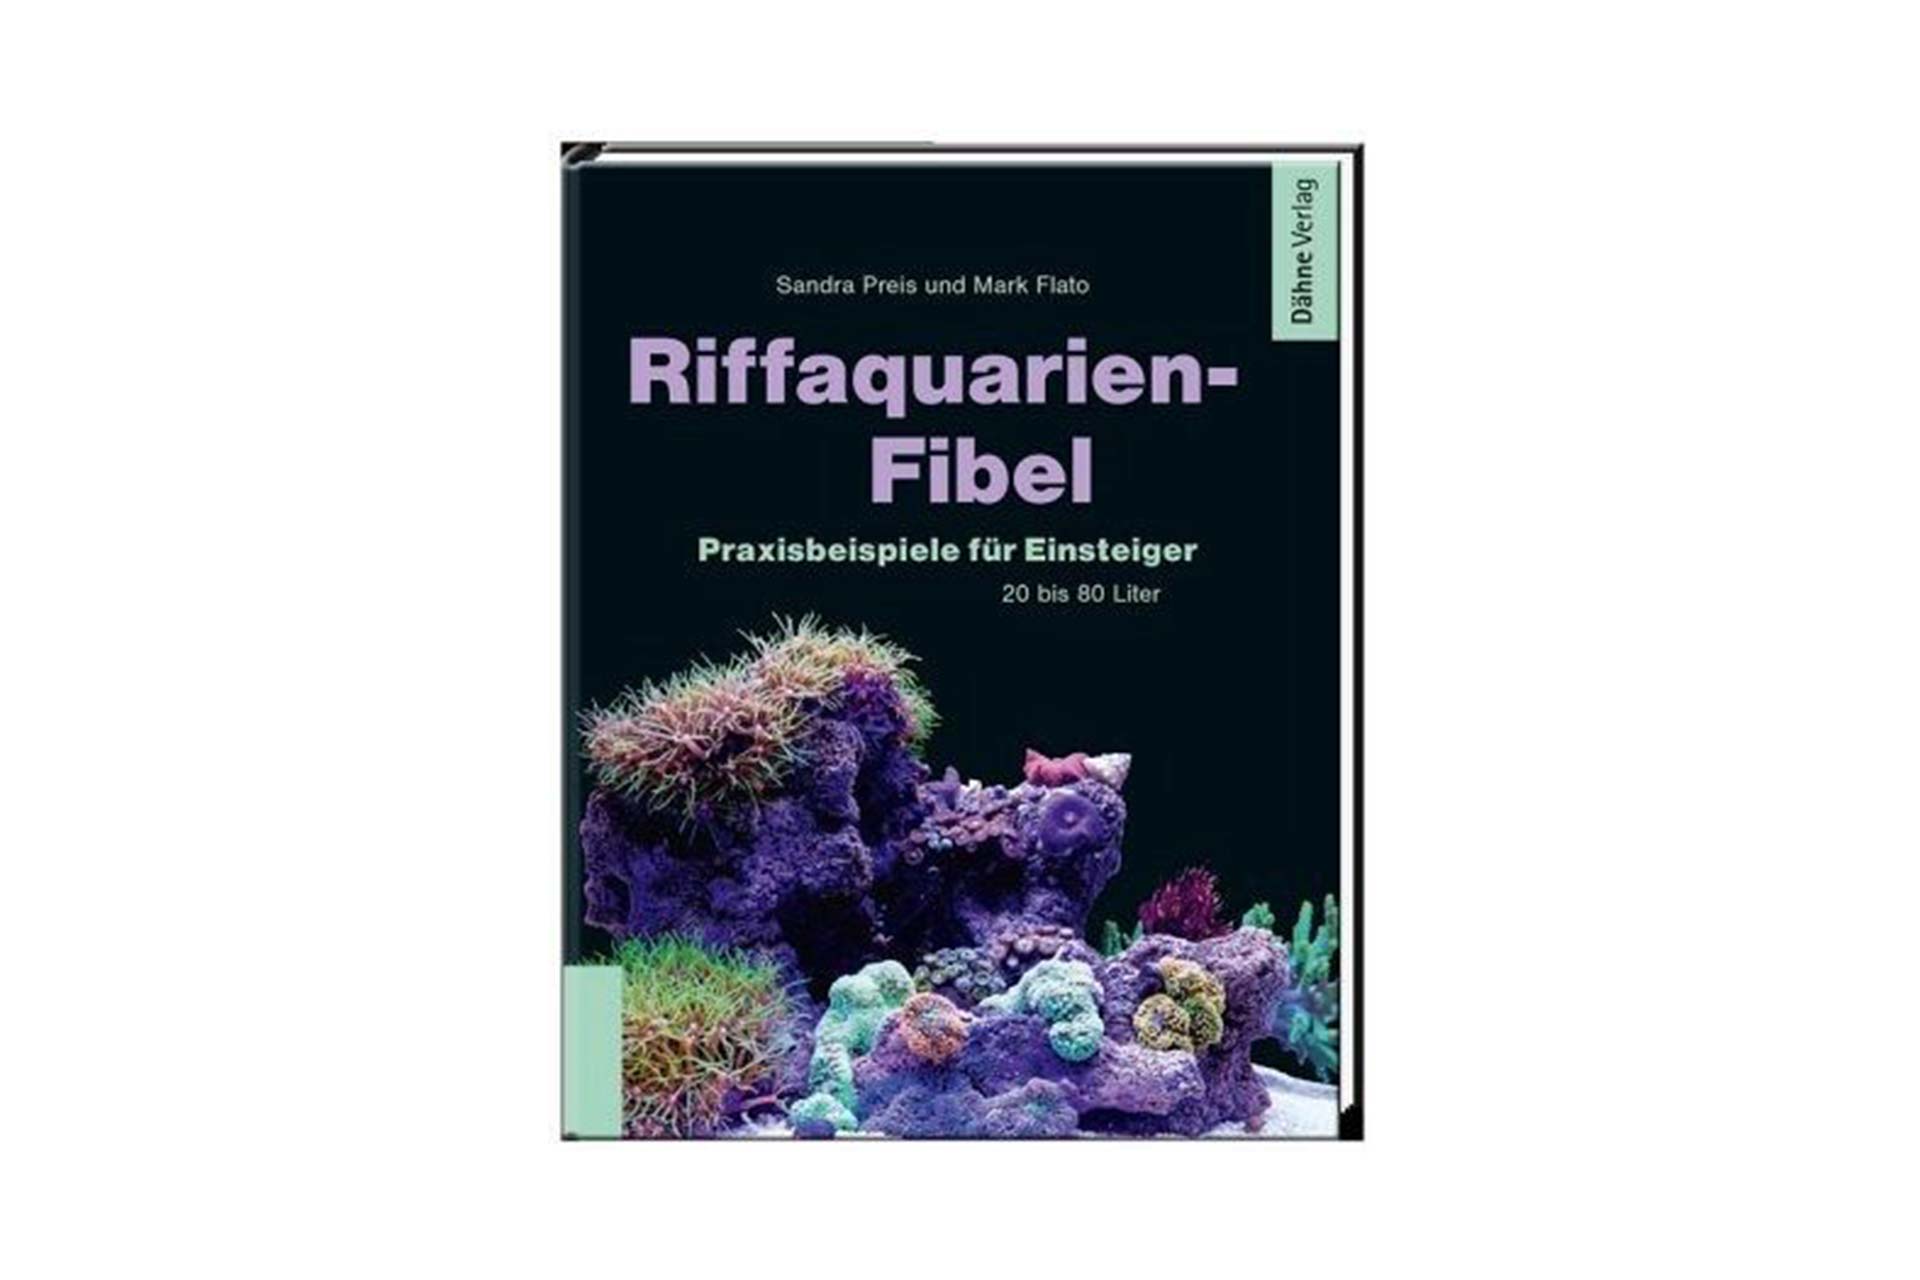 Riffaquarien-Fibel - Preis/Flato